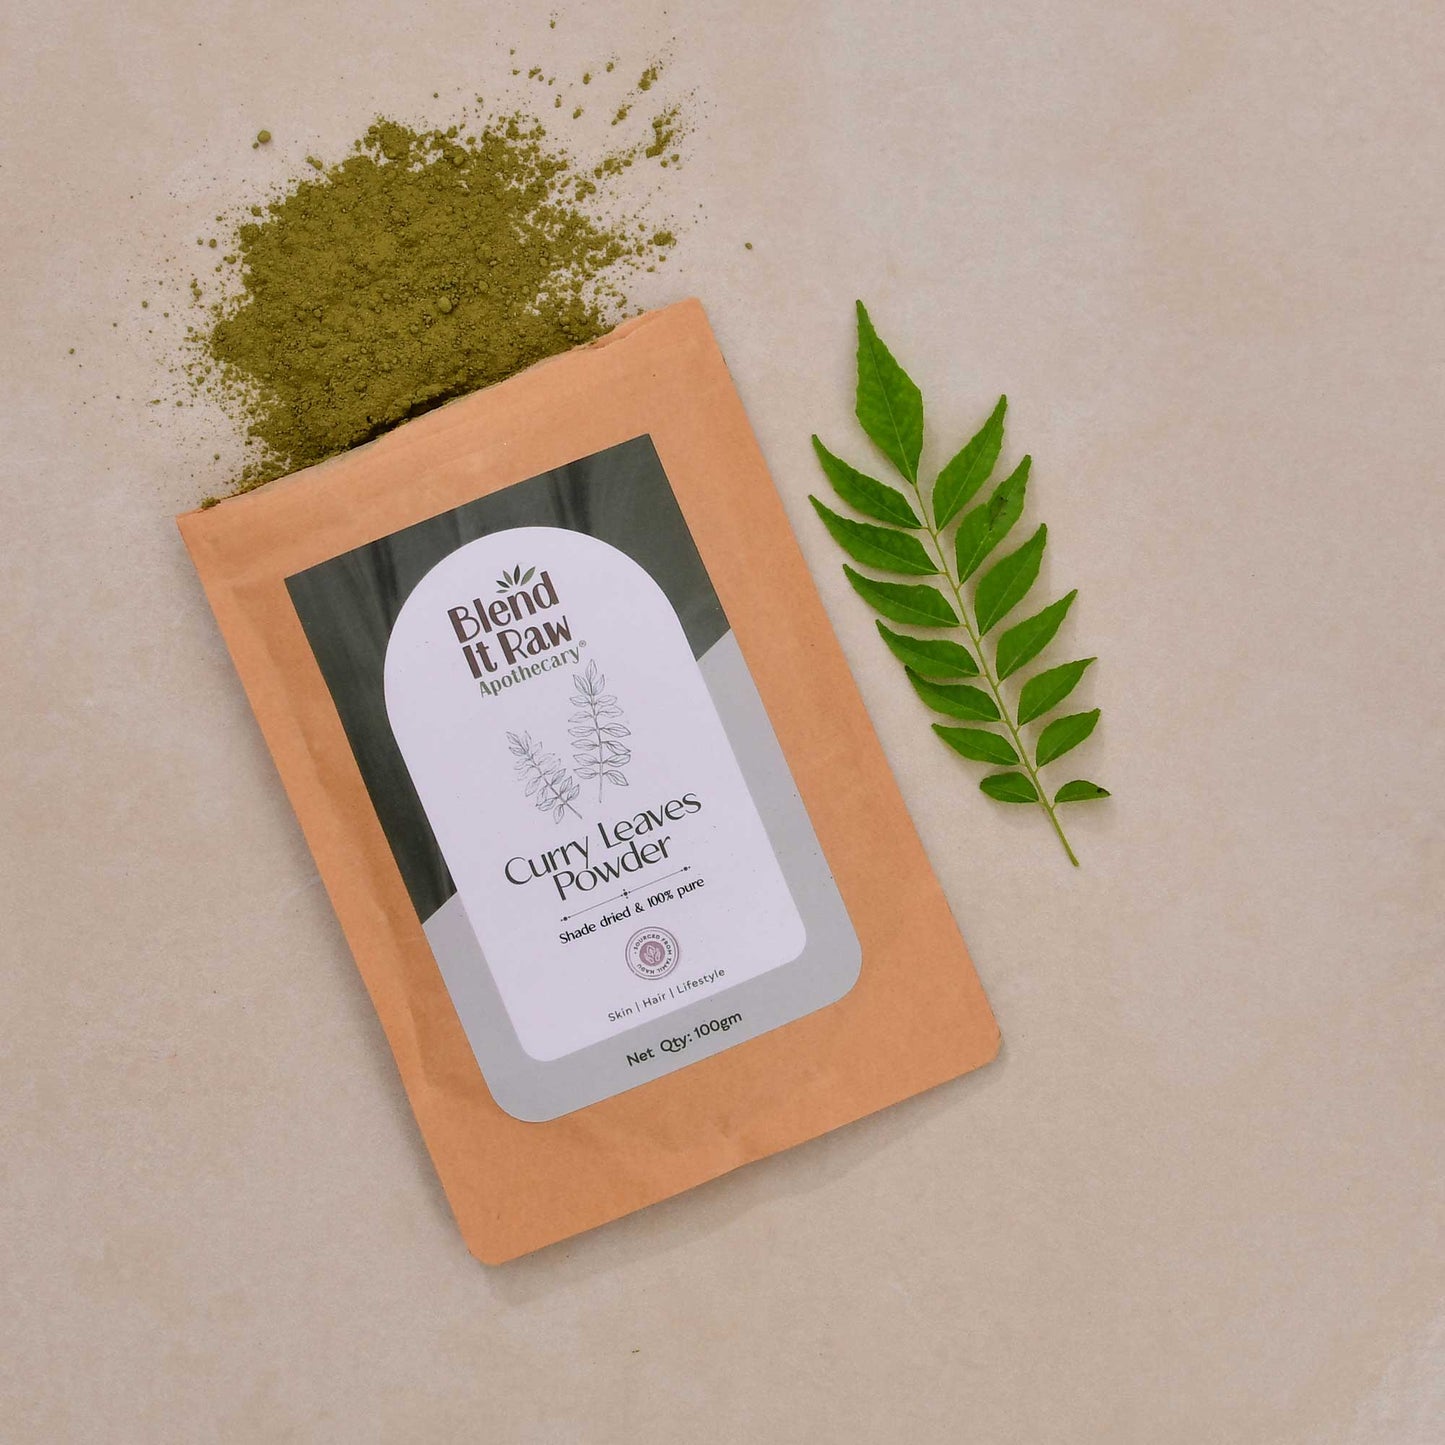 Organic curry leaf powder - Blend It Raw Apothecary